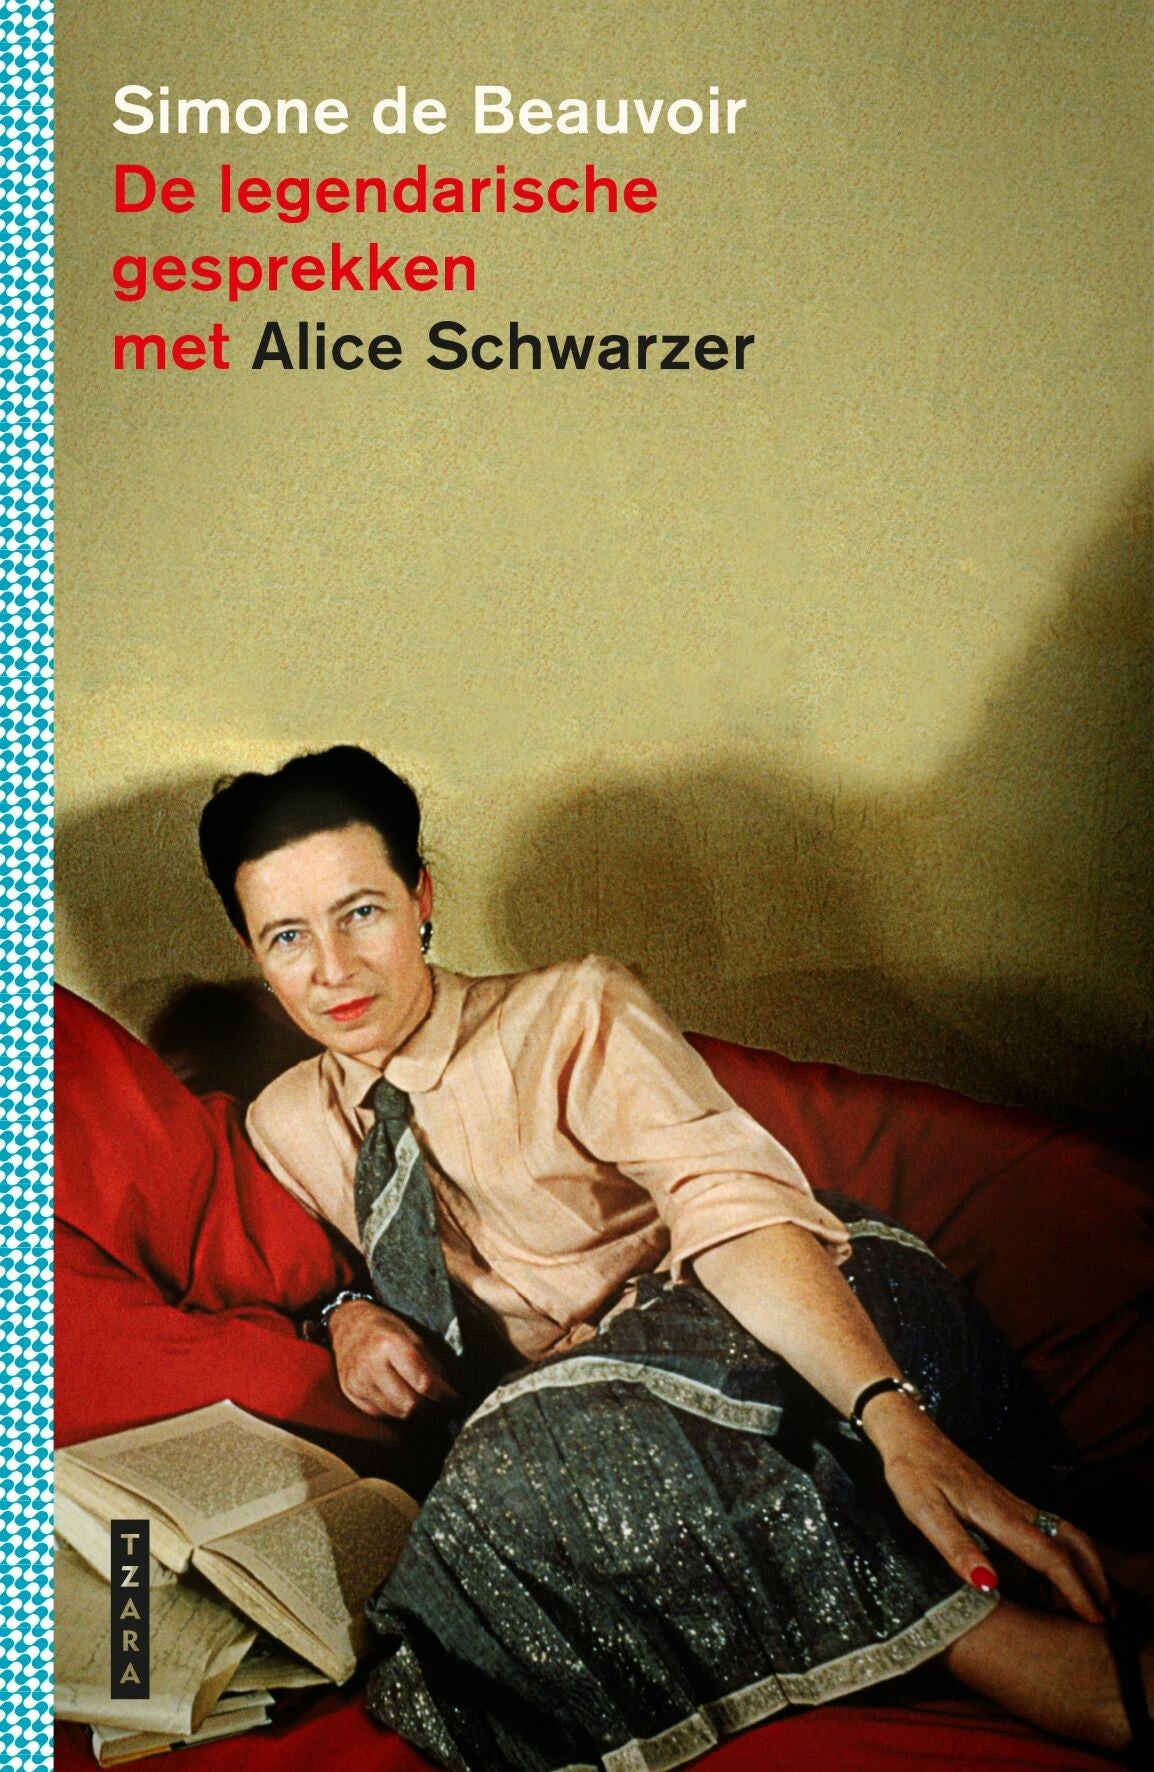 De legendarische gesprekken met Alice Schwarzer